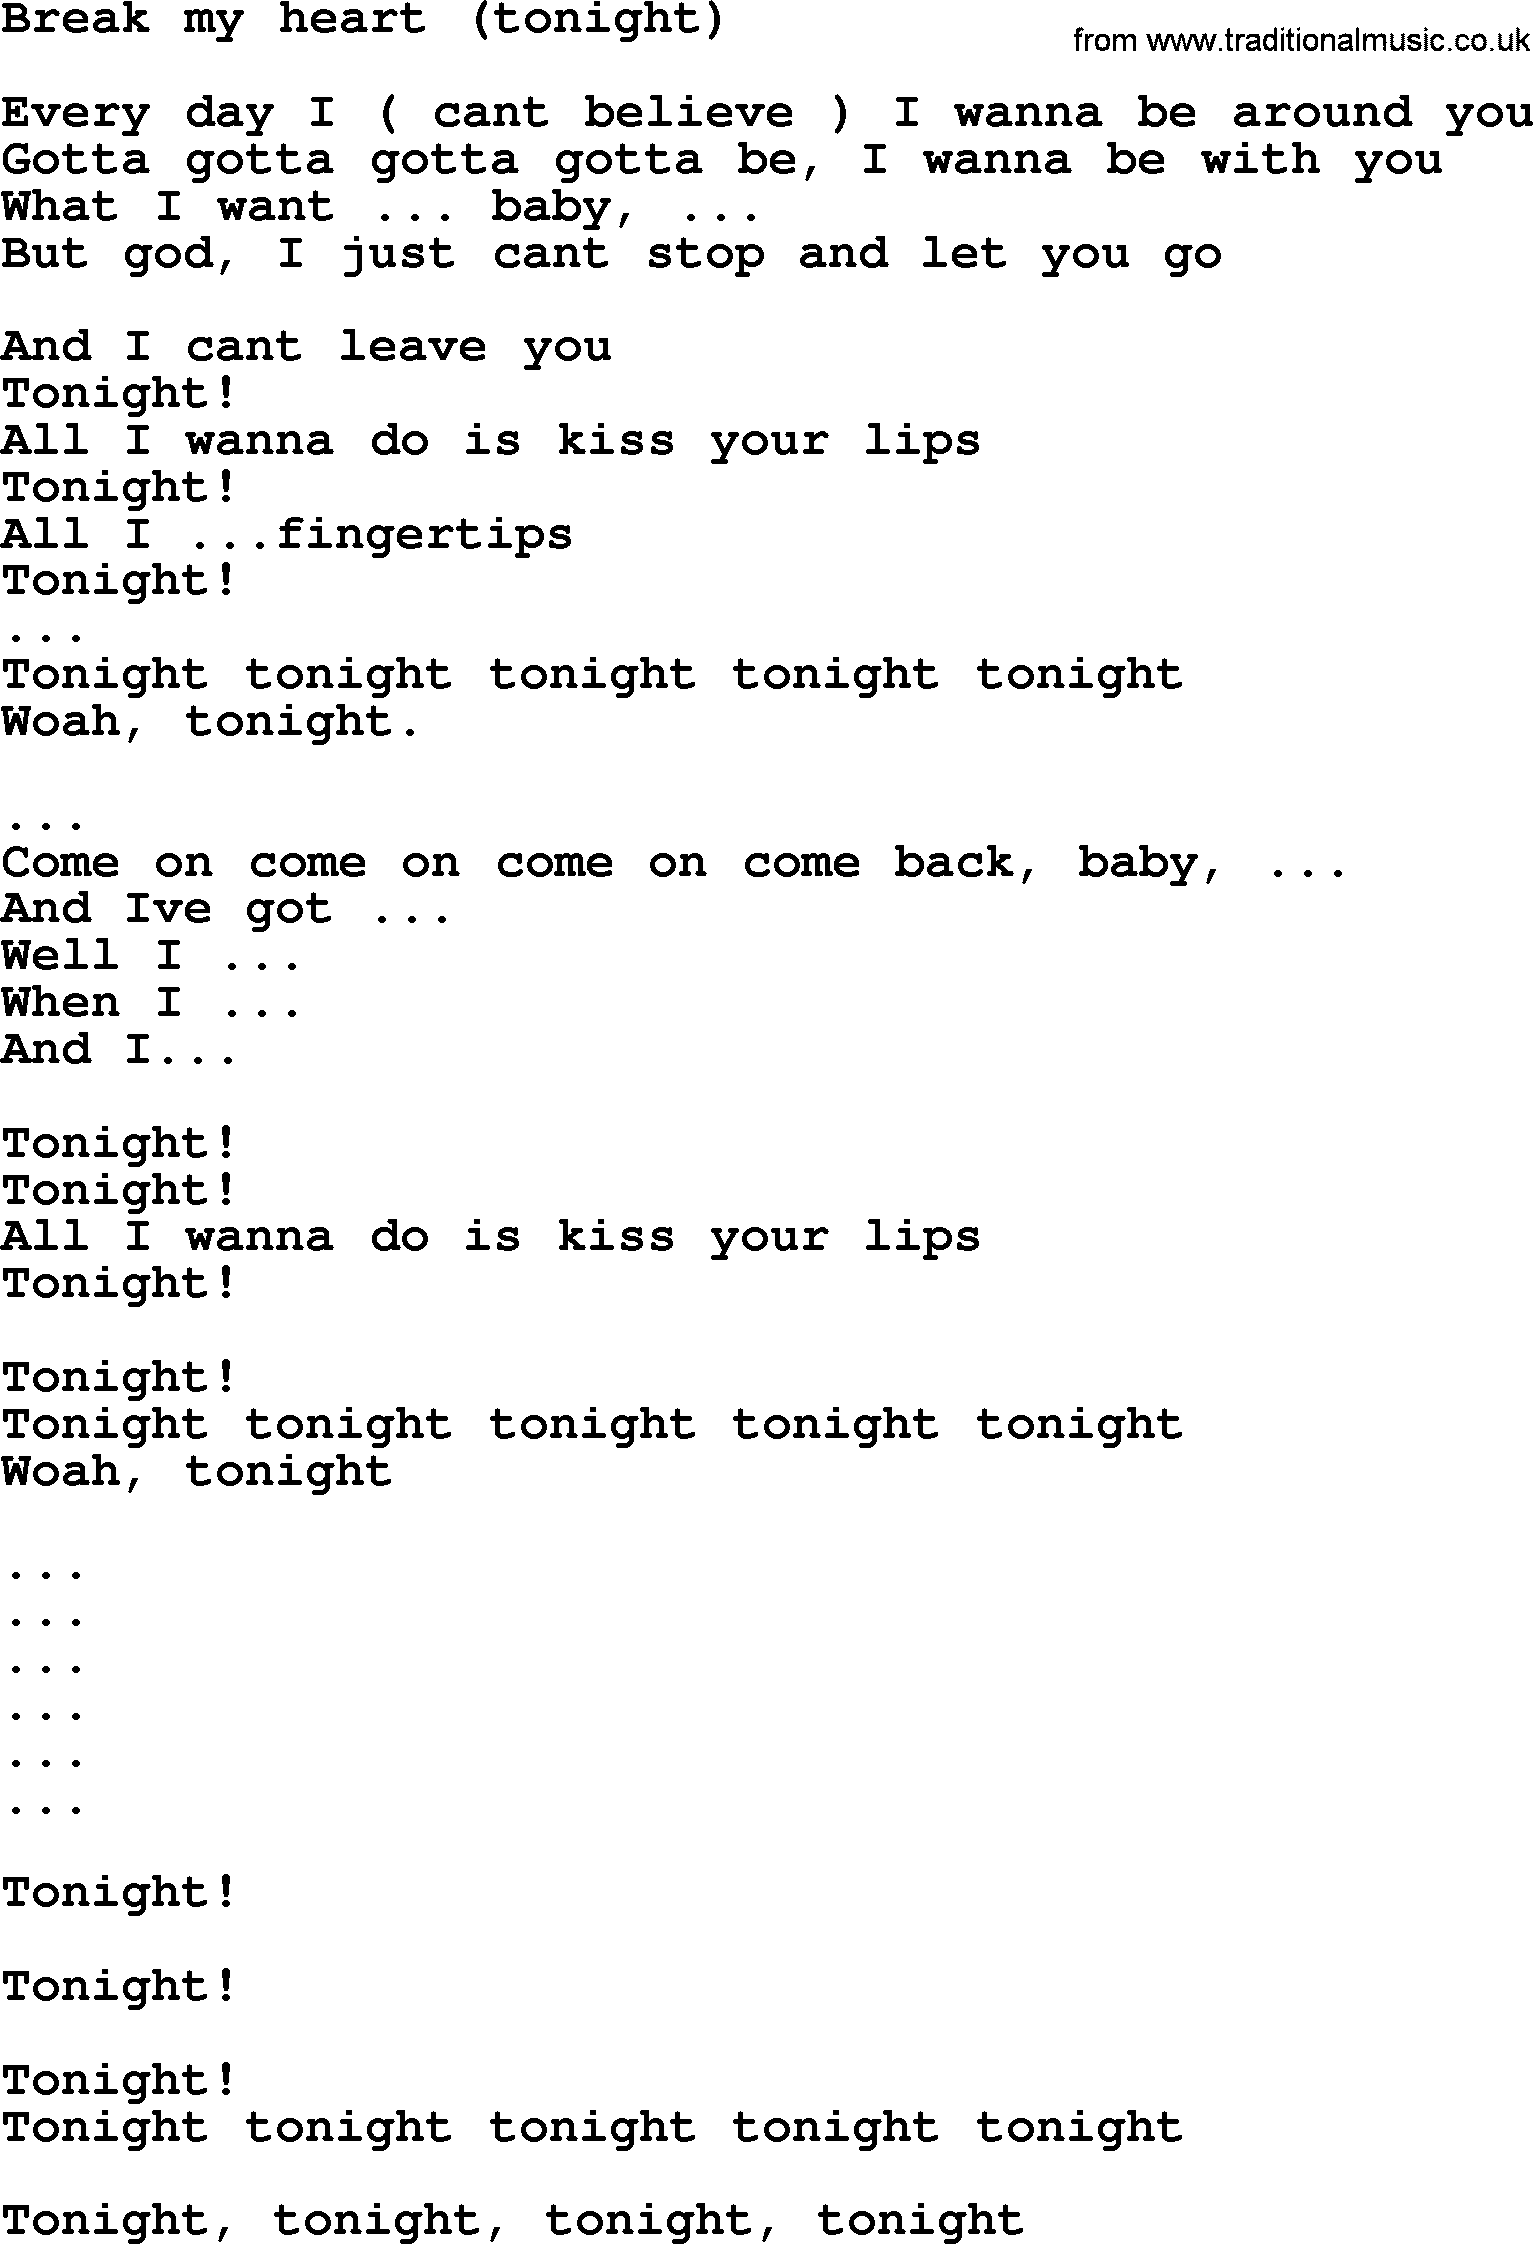 Bruce Springsteen song: Break My Heart(Tonight) lyrics